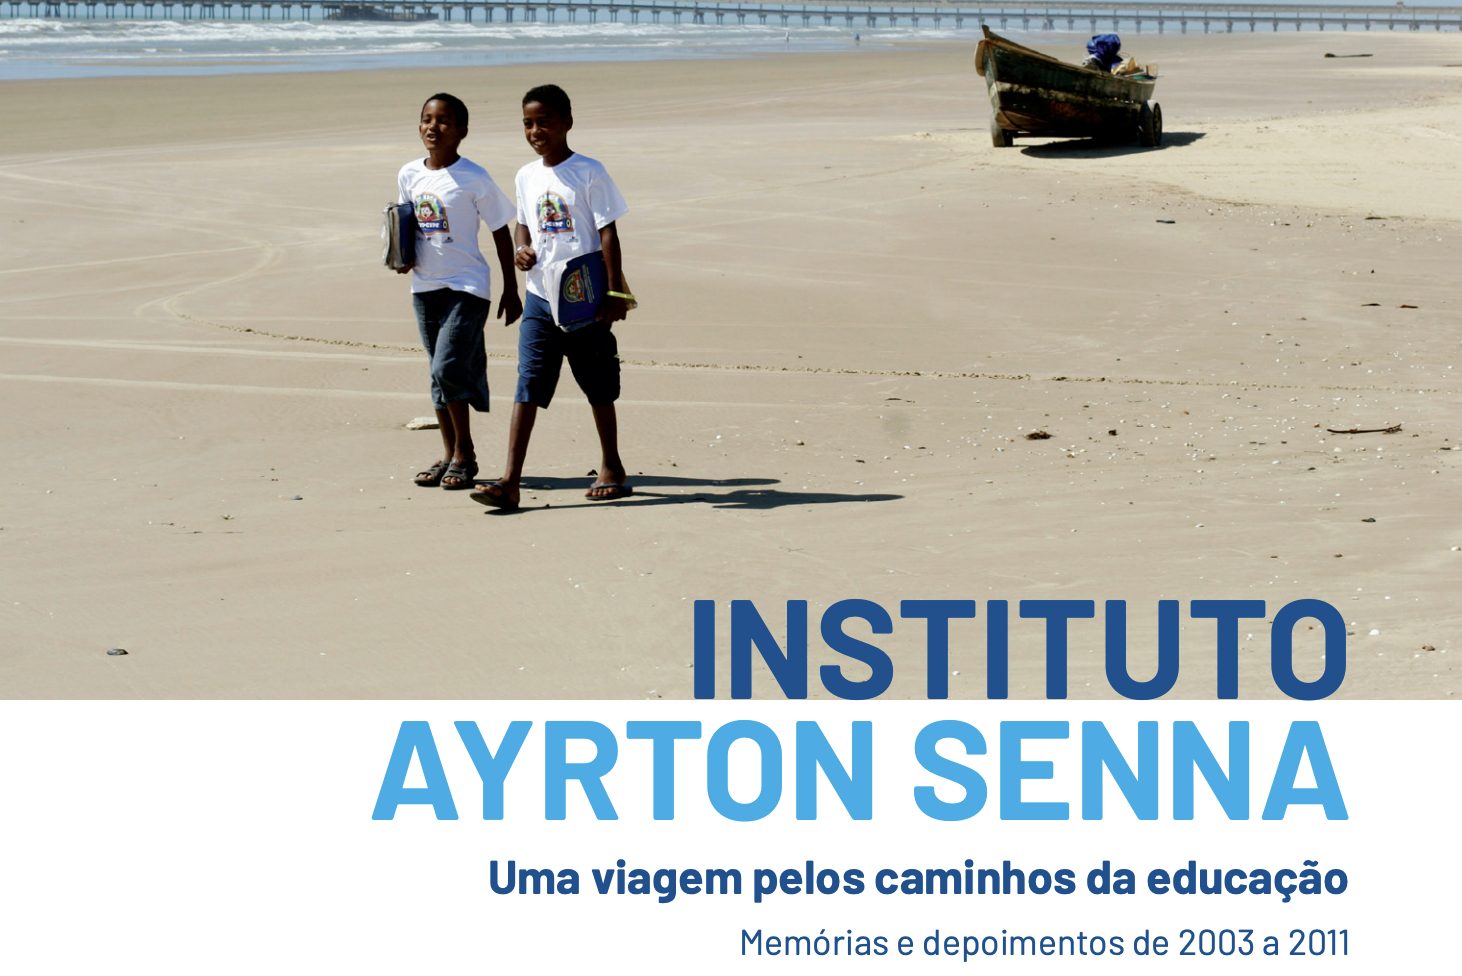 O Instituto Ayrton Senna tem como foco o desenvolvimento de competências socioemocionais, com destaque para o fortalecimento da resiliência emocional.